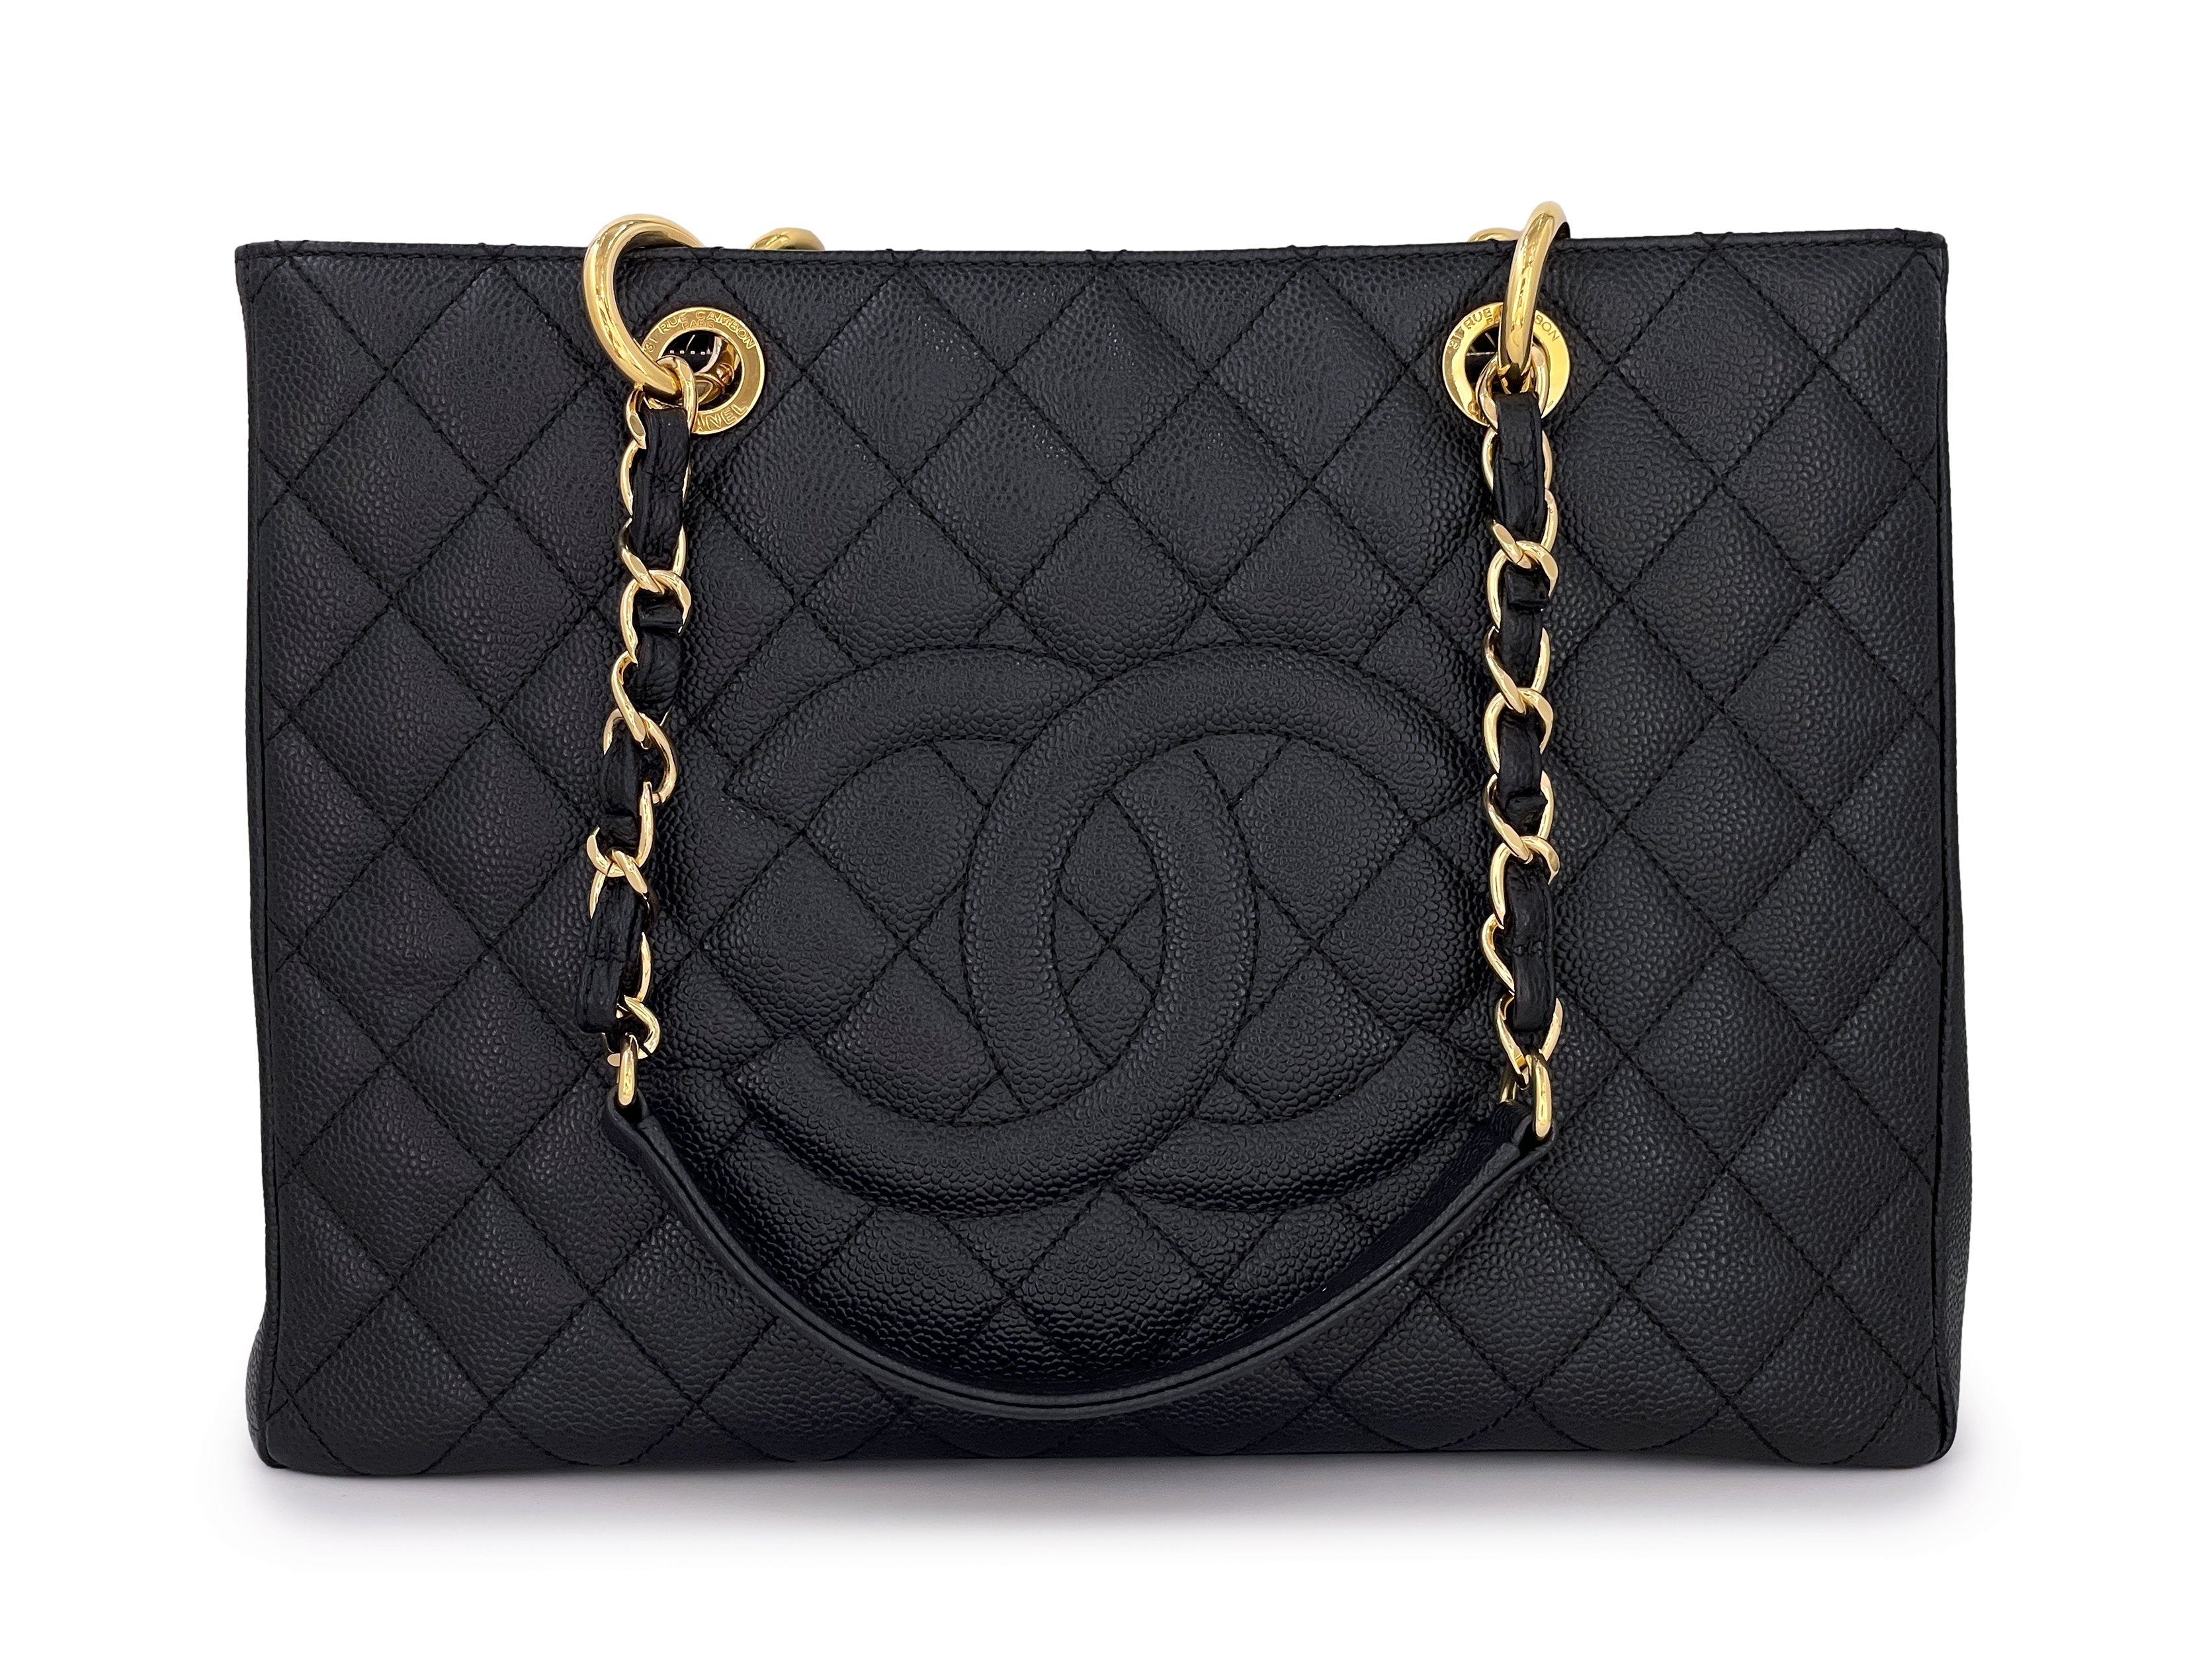 Chanel Caviar Tote Bag - 127 For Sale on 1stDibs